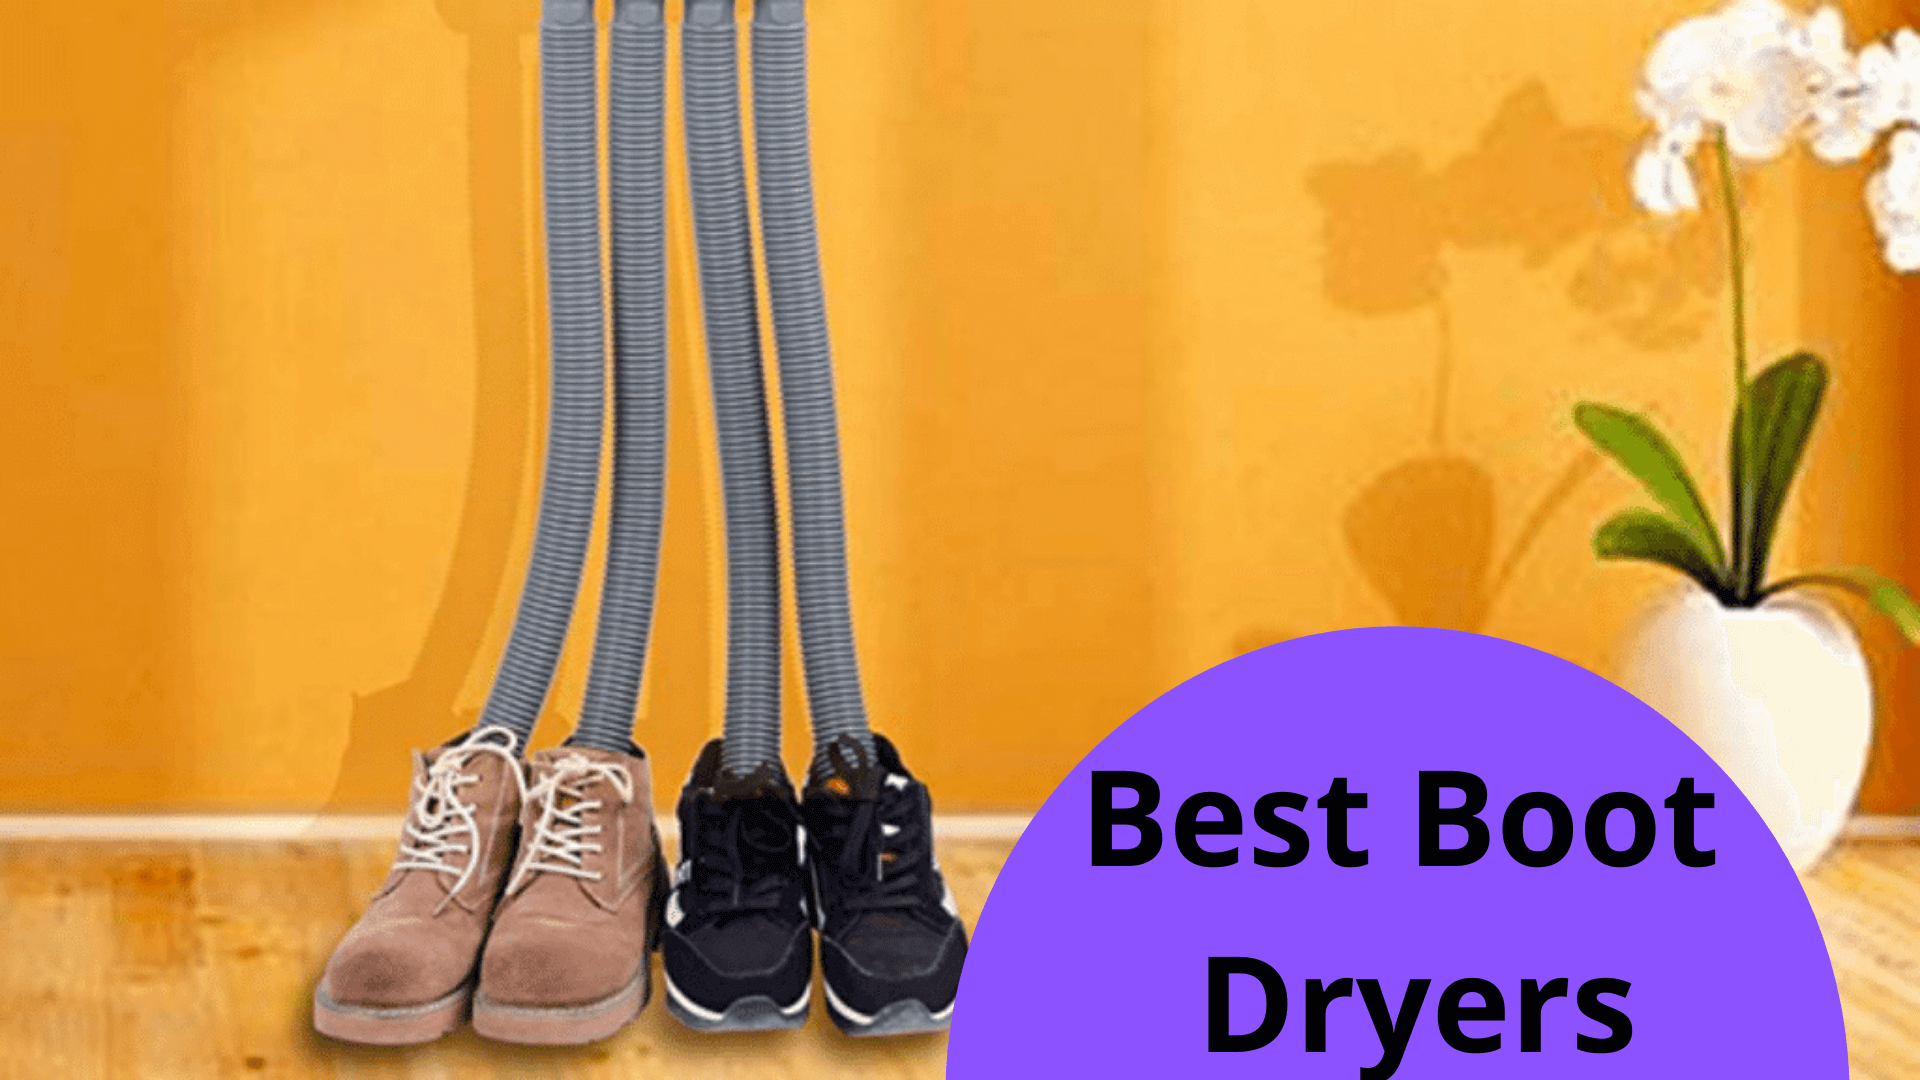 Best Boot Dryers